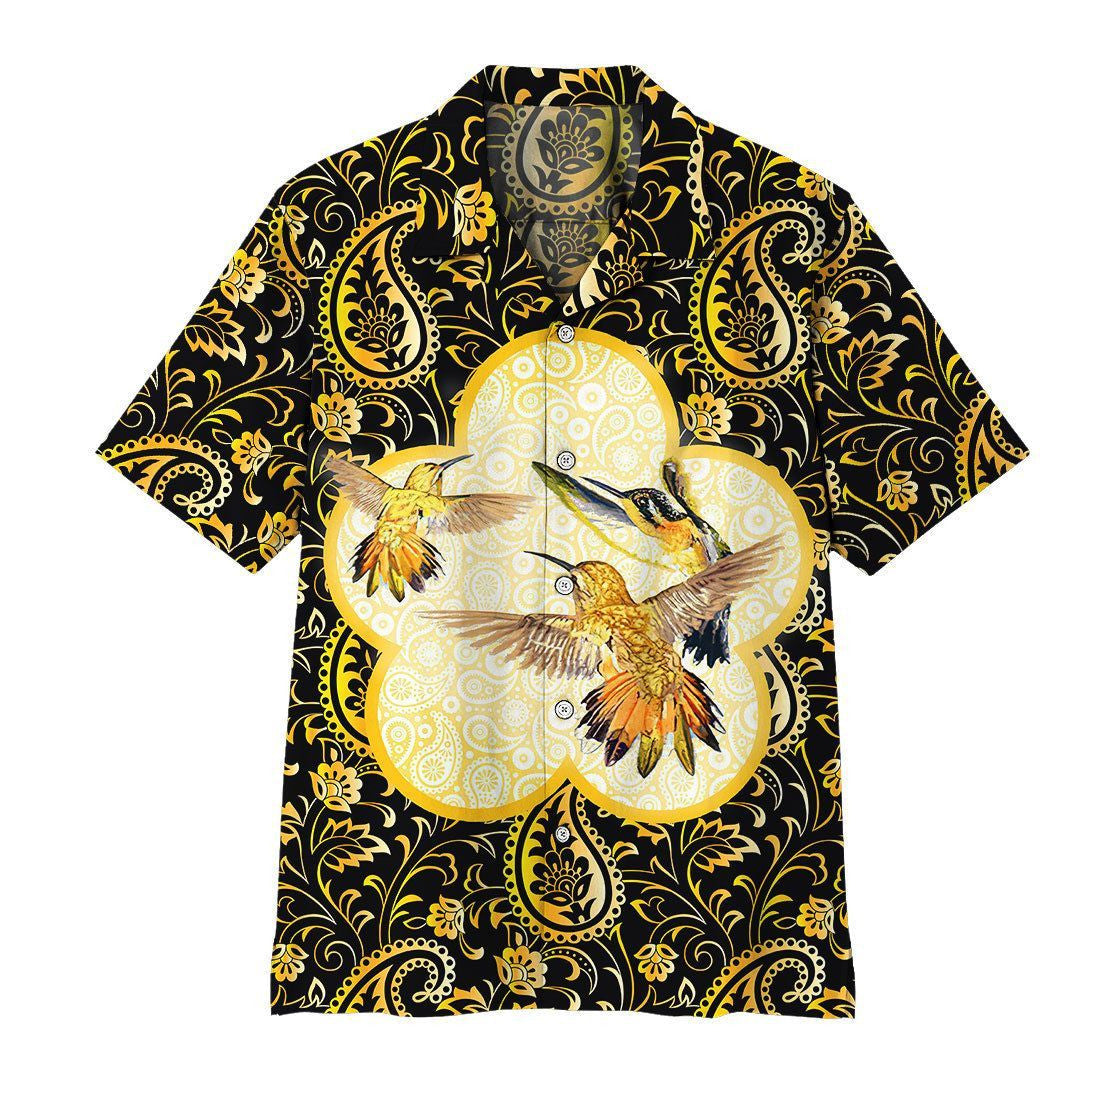 Gearhuman 3D Flying Hummingbirds Hawaiian Shirt, Aloha Shirt For Summer